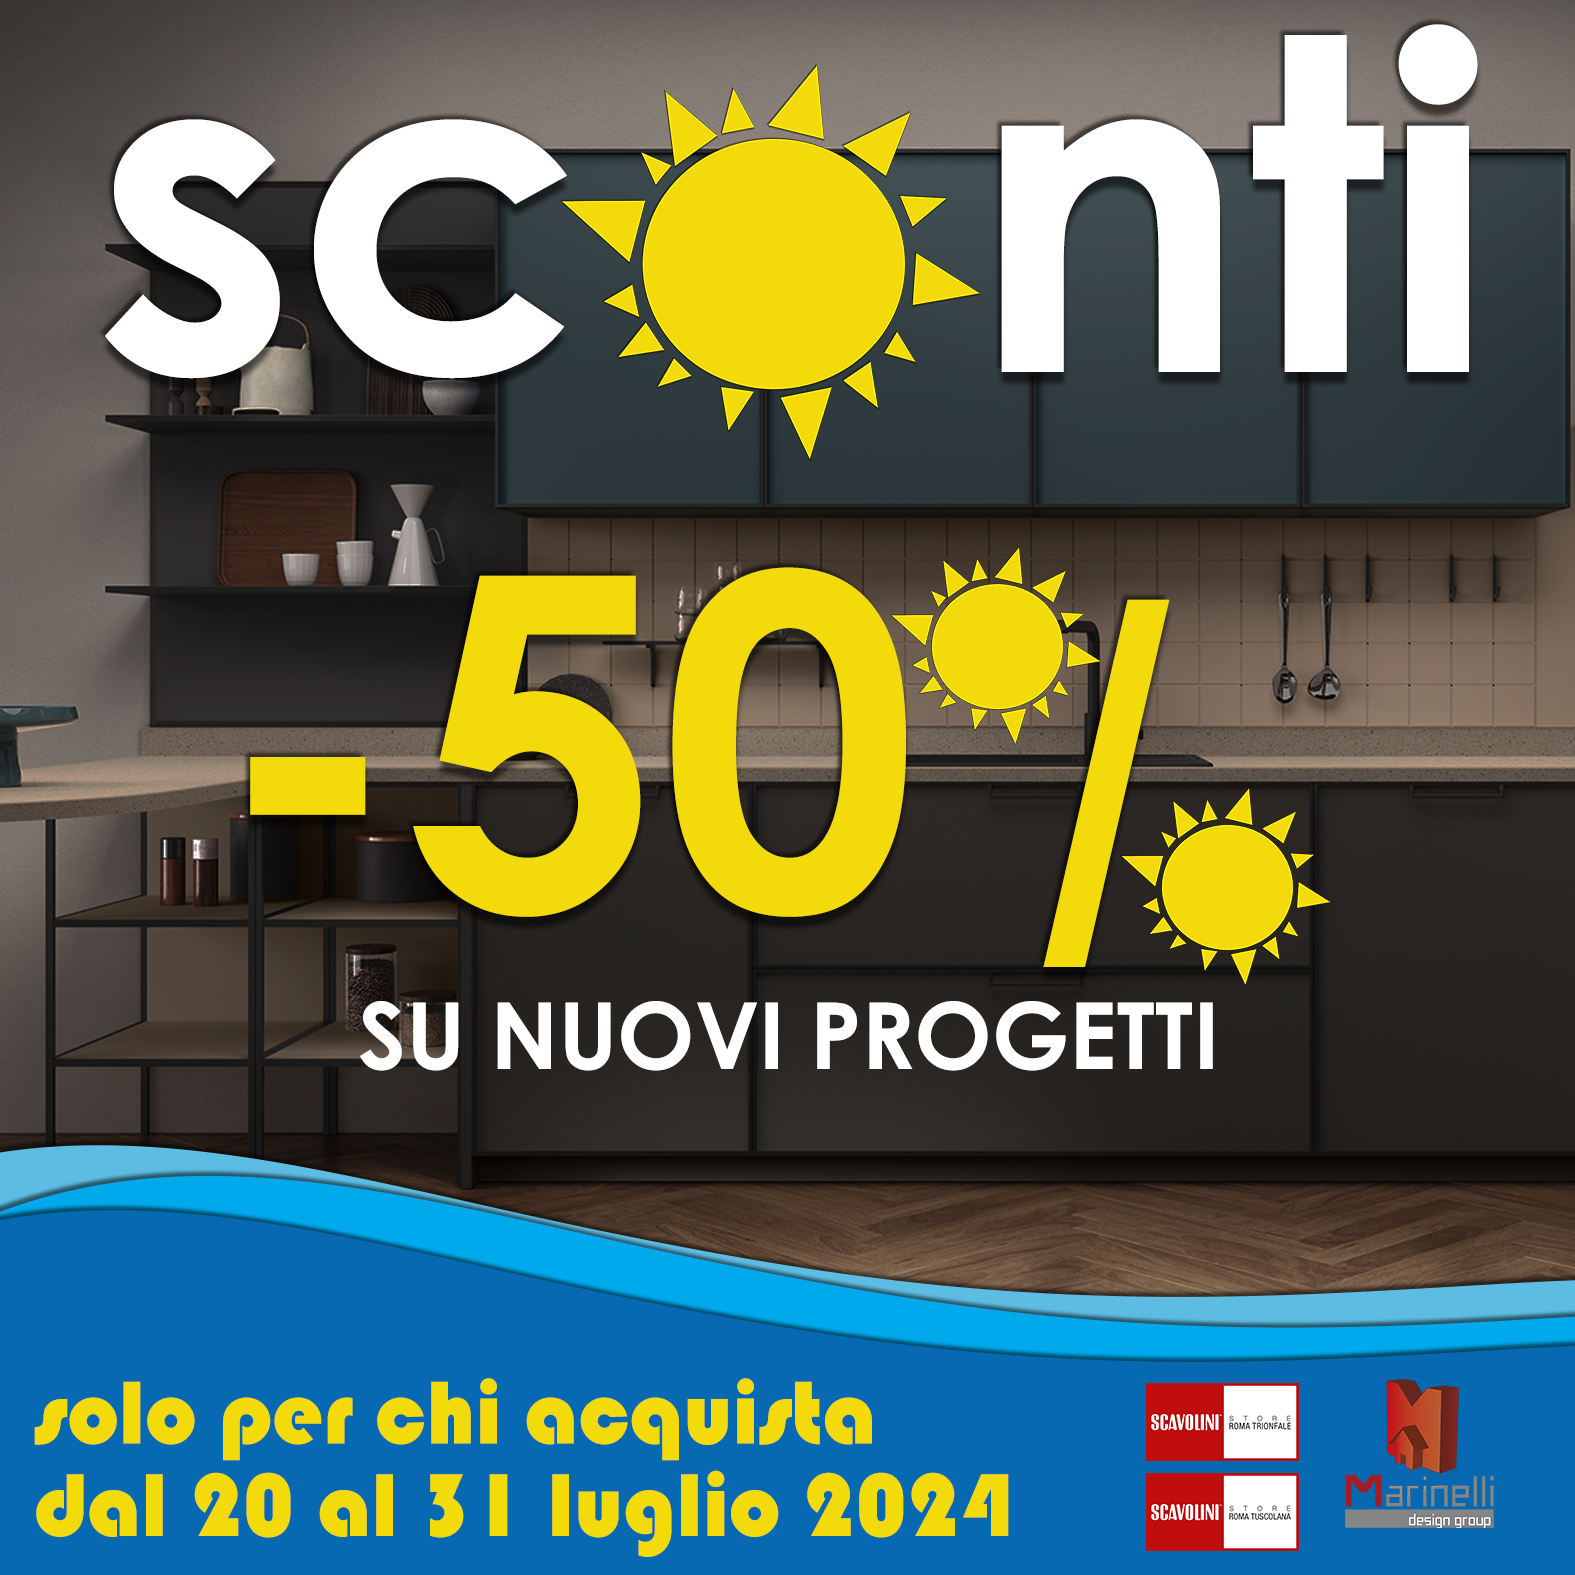 Cucine Scavolini al 50% di sconto Marinelli design Group arredamento qualità made in Italy prezzo conveniente mobili